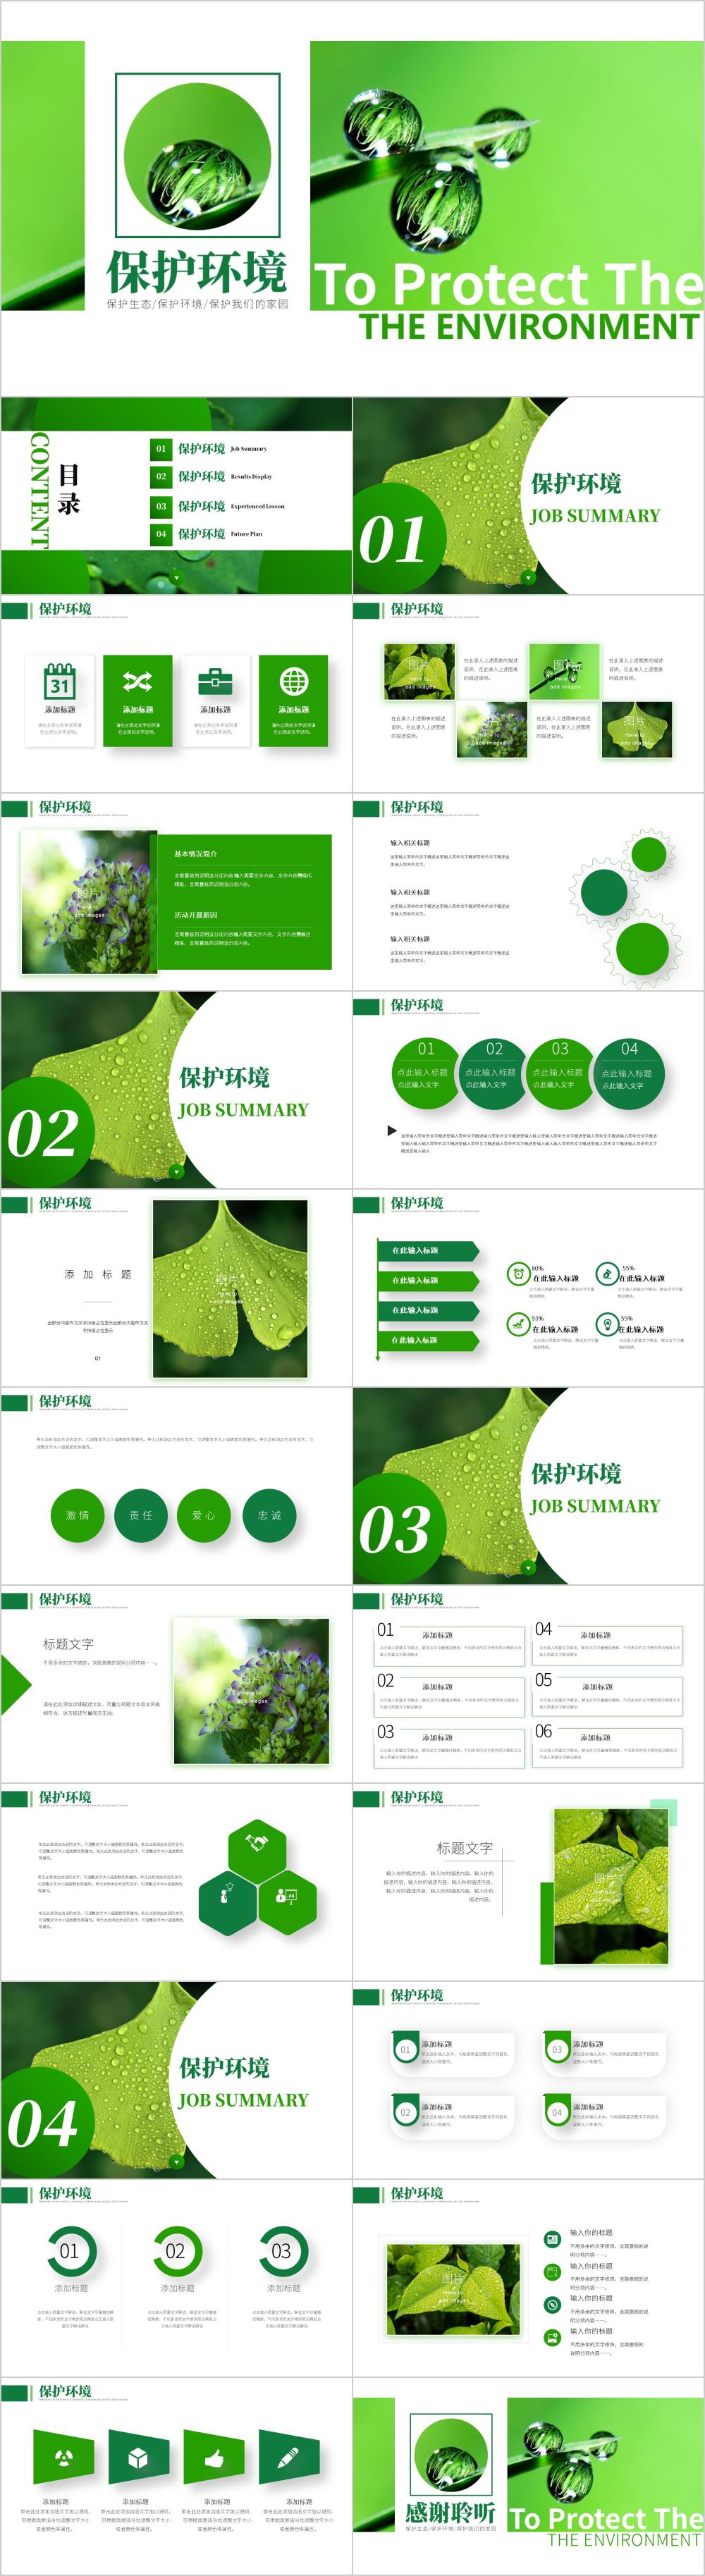 唯美绿色植物保护环境PPT模板